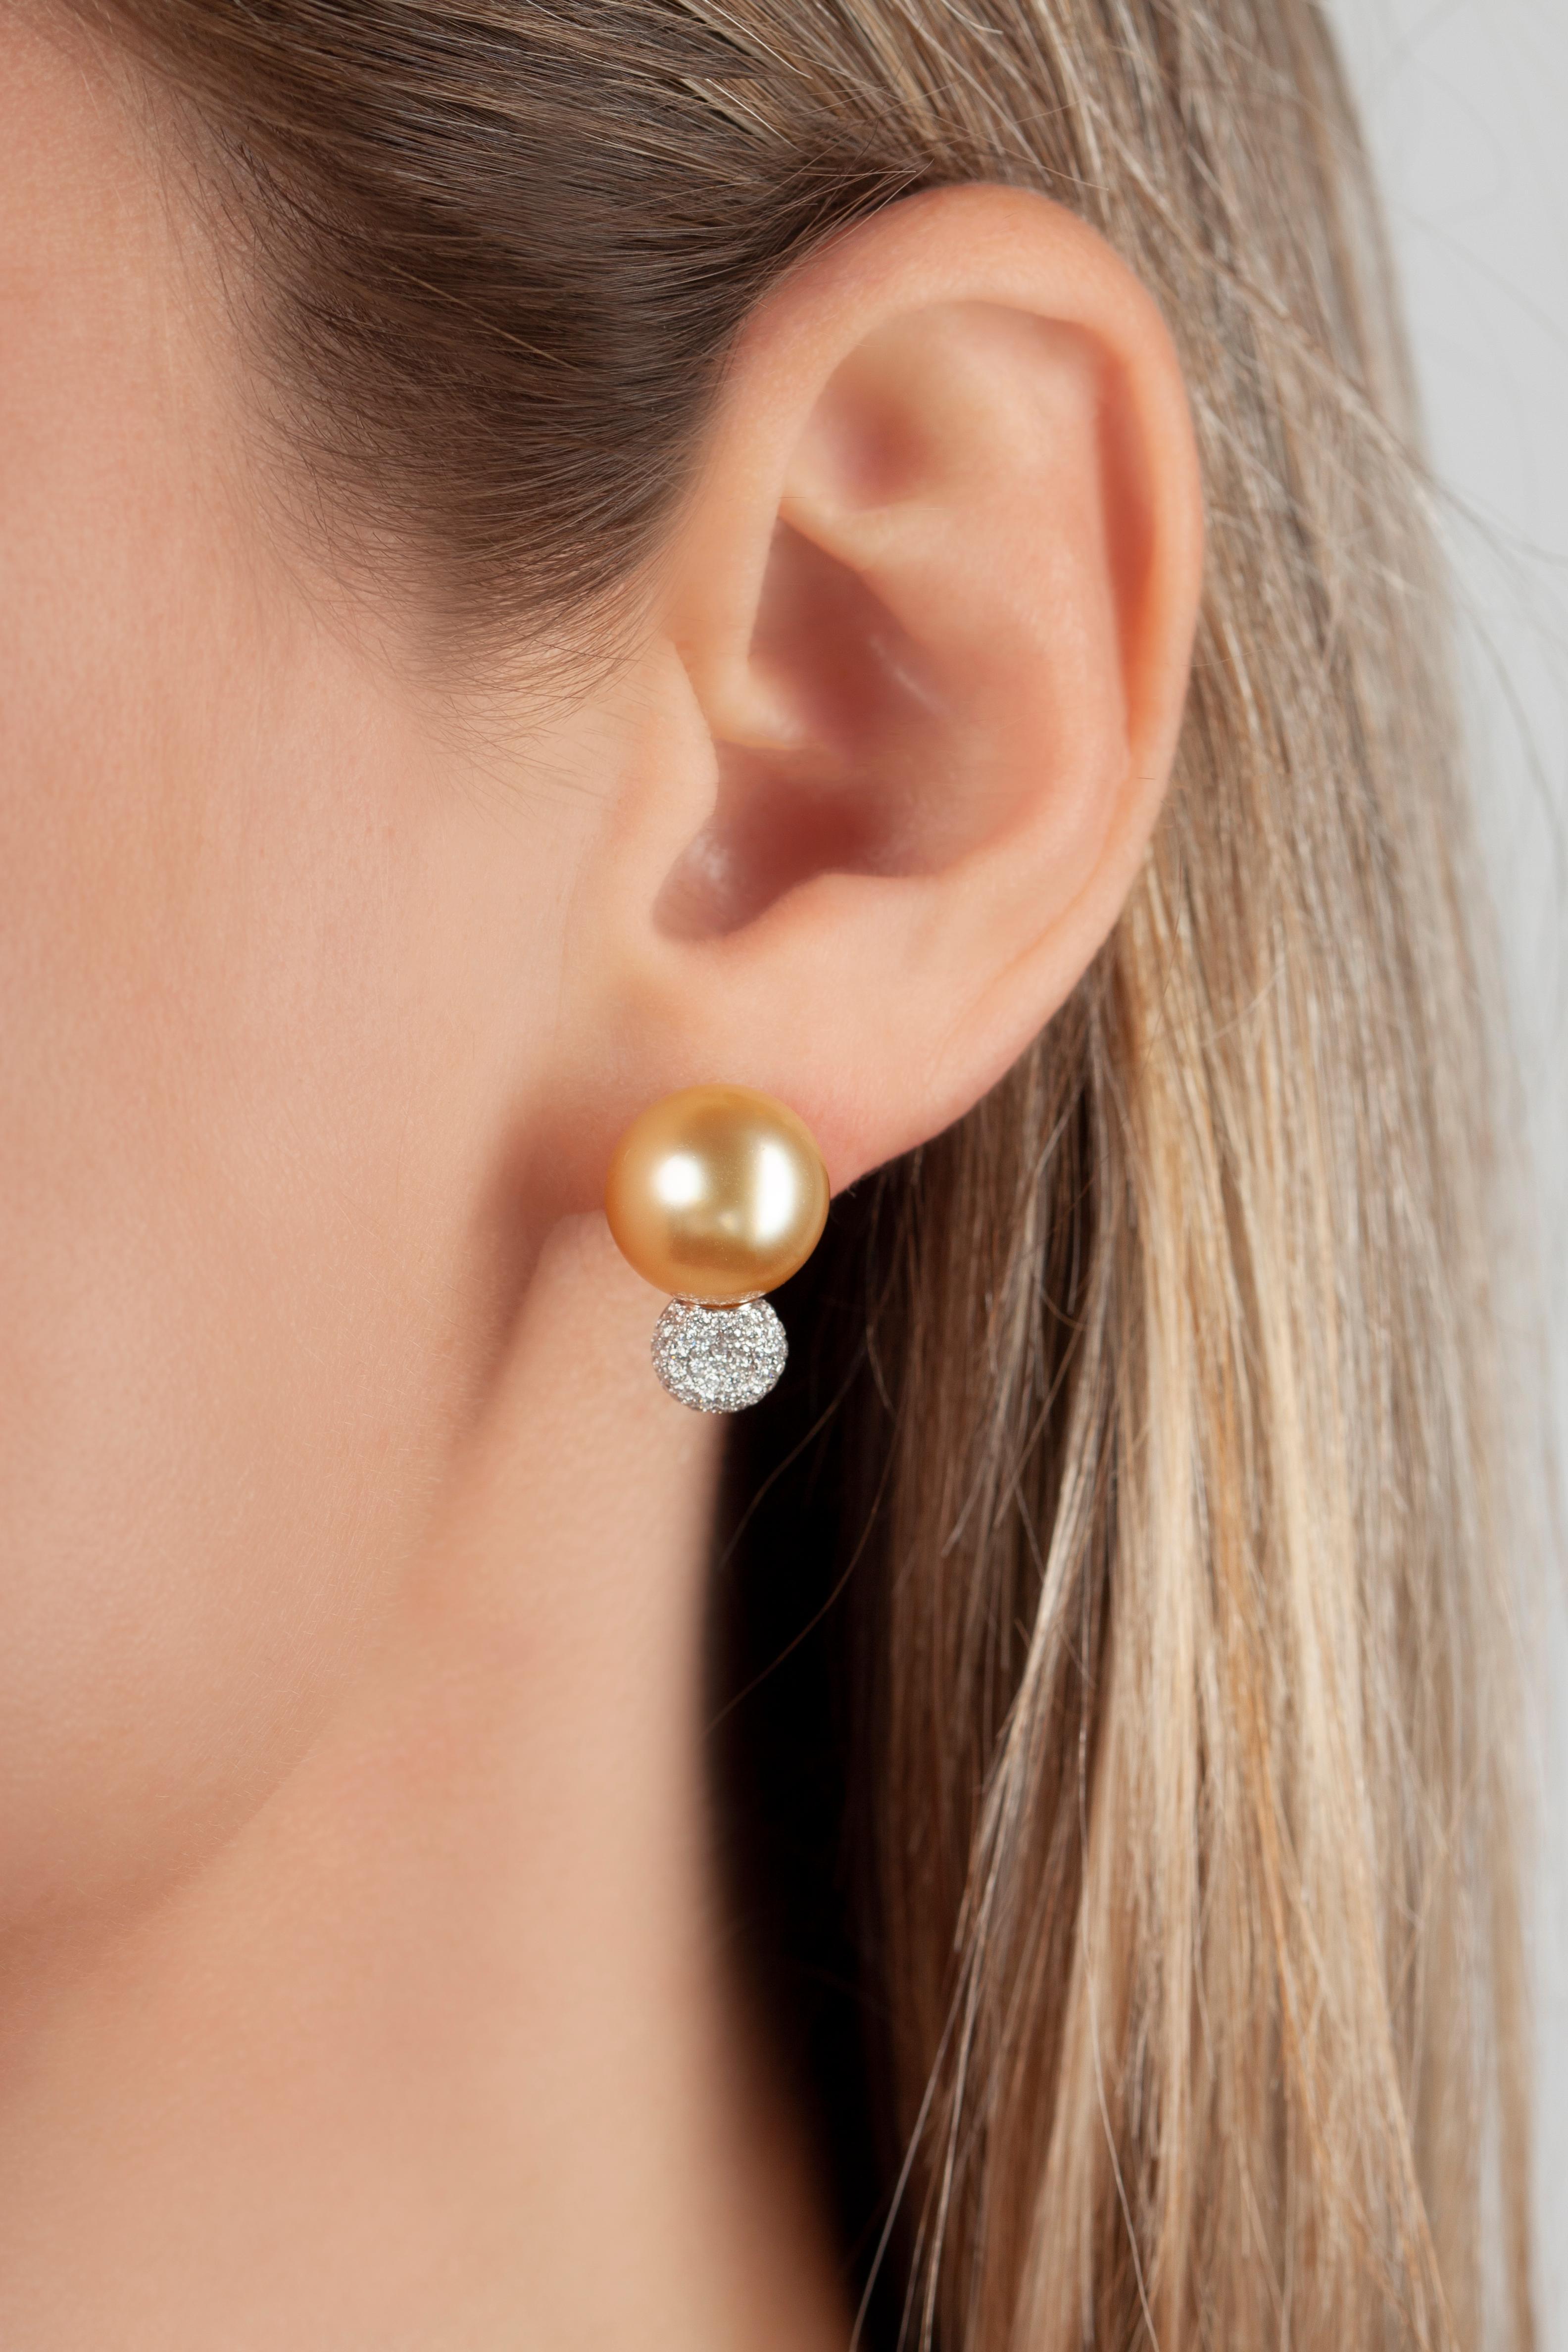 Diese spektakulären Ohrringe von Yoko London bestehen aus lebhaften goldenen Südseeperlen, die von einem funkelnden Diamantencluster gekrönt werden. Die seltensten aller Perlenarten, die Goldenen Südseeperlen in diesen Ohrringen, wurden von Experten